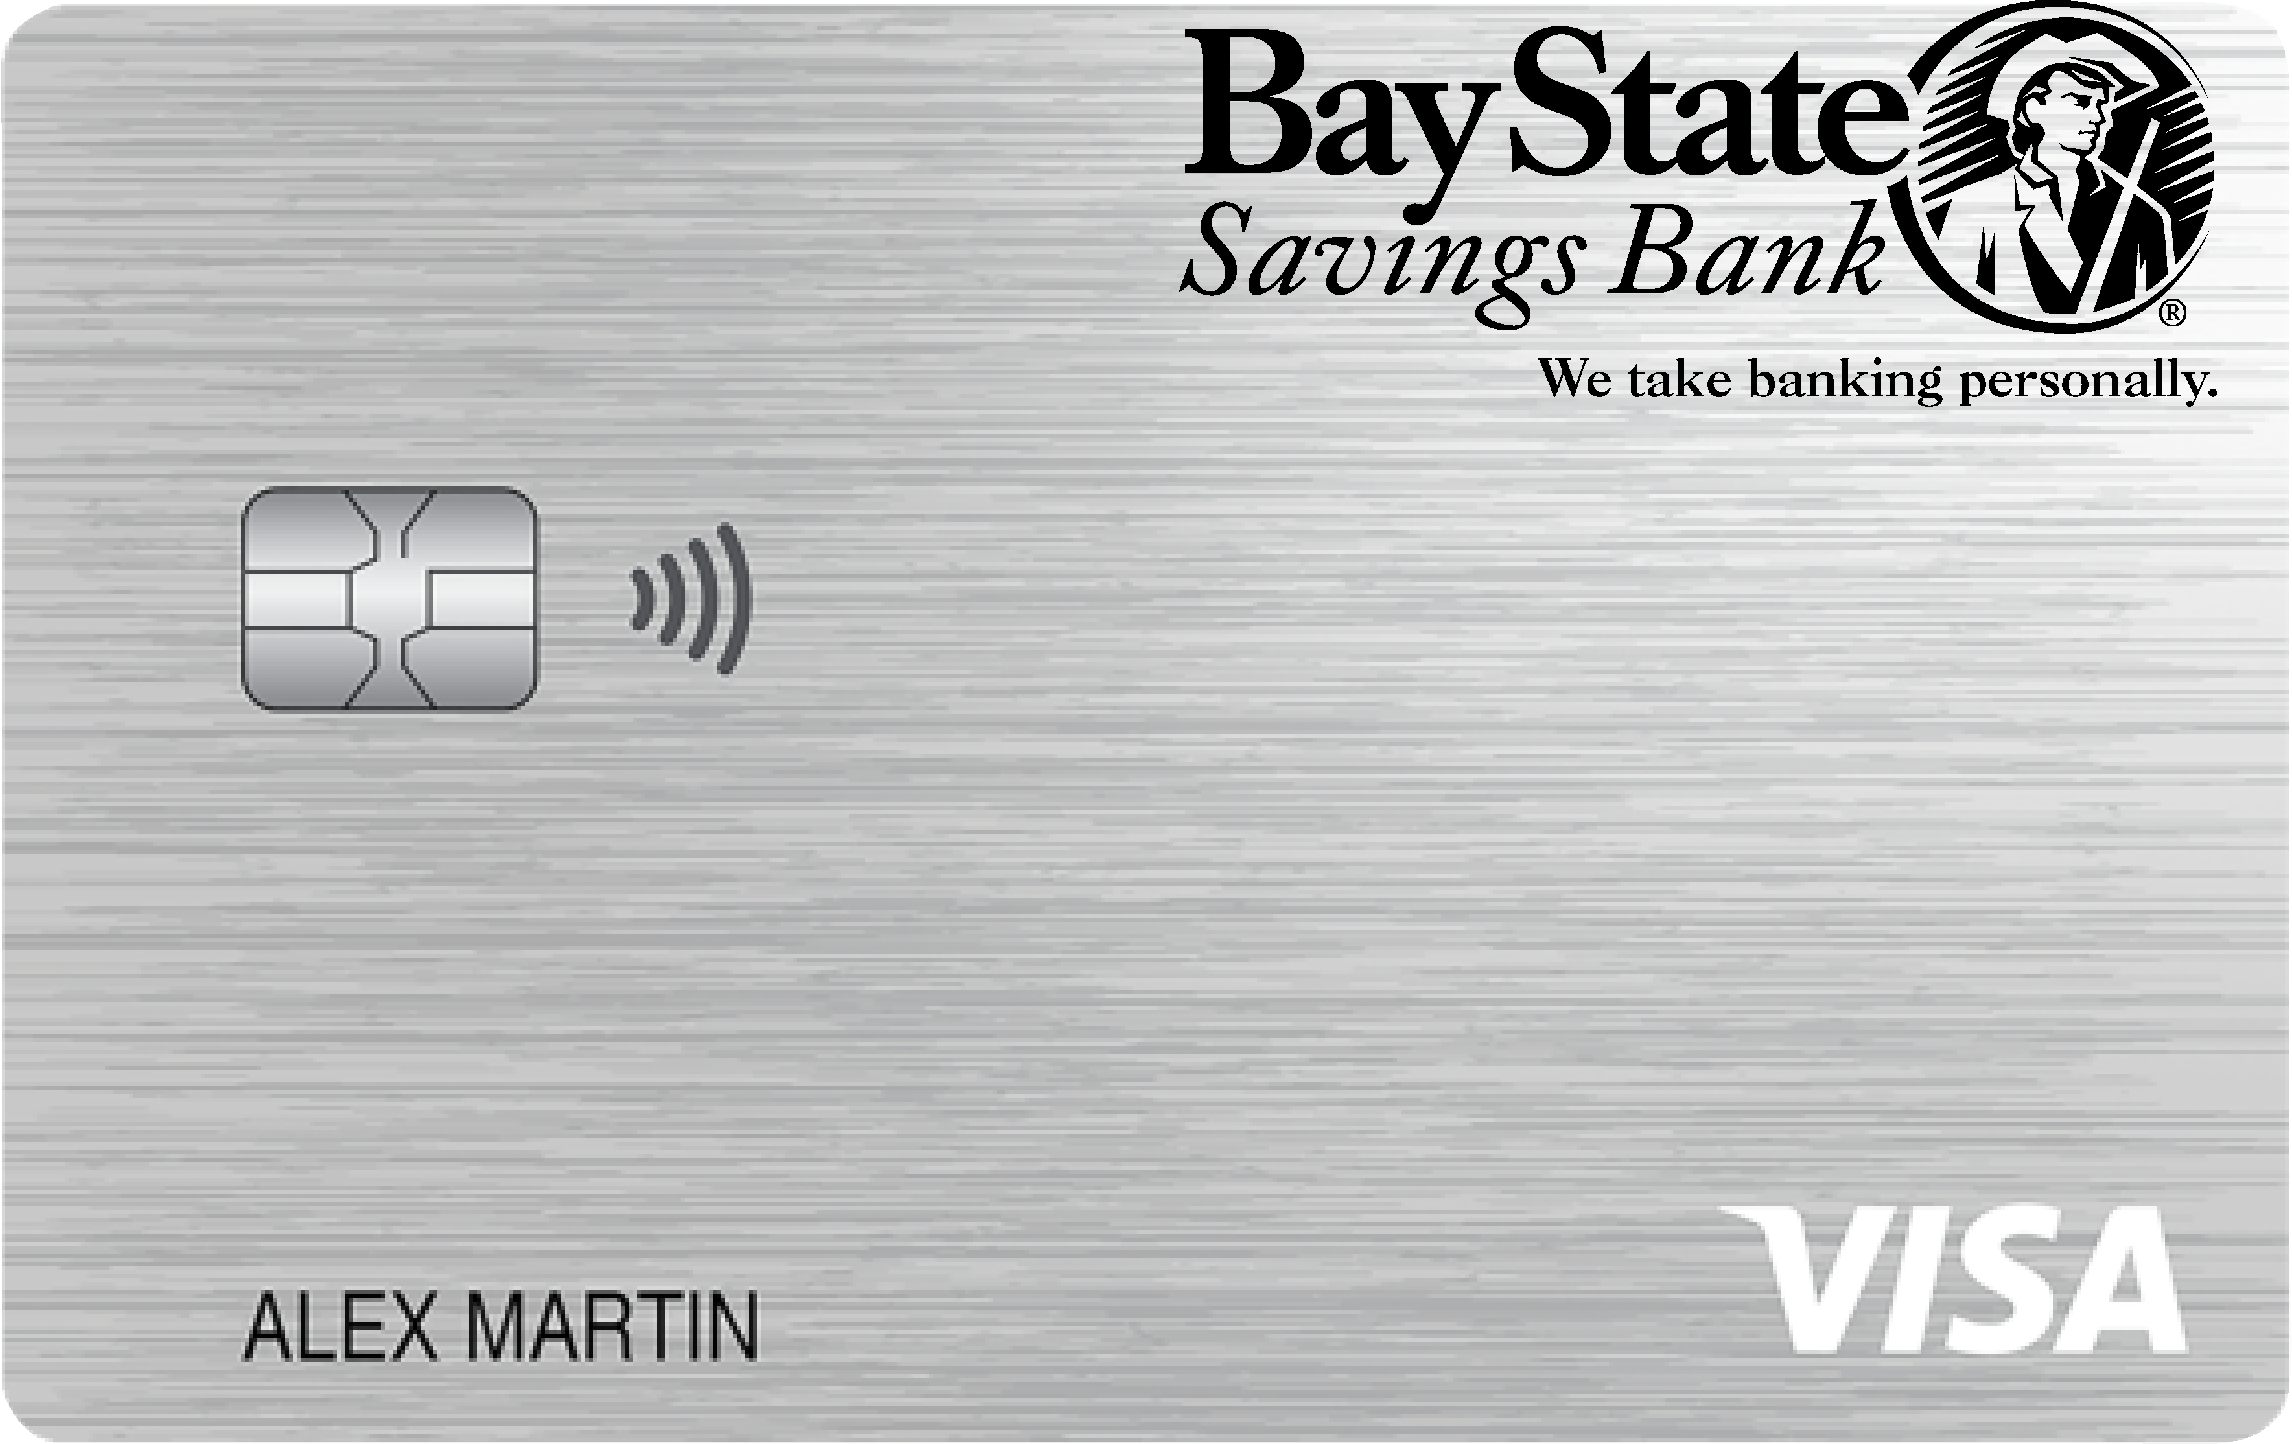 Bay State Savings Bank